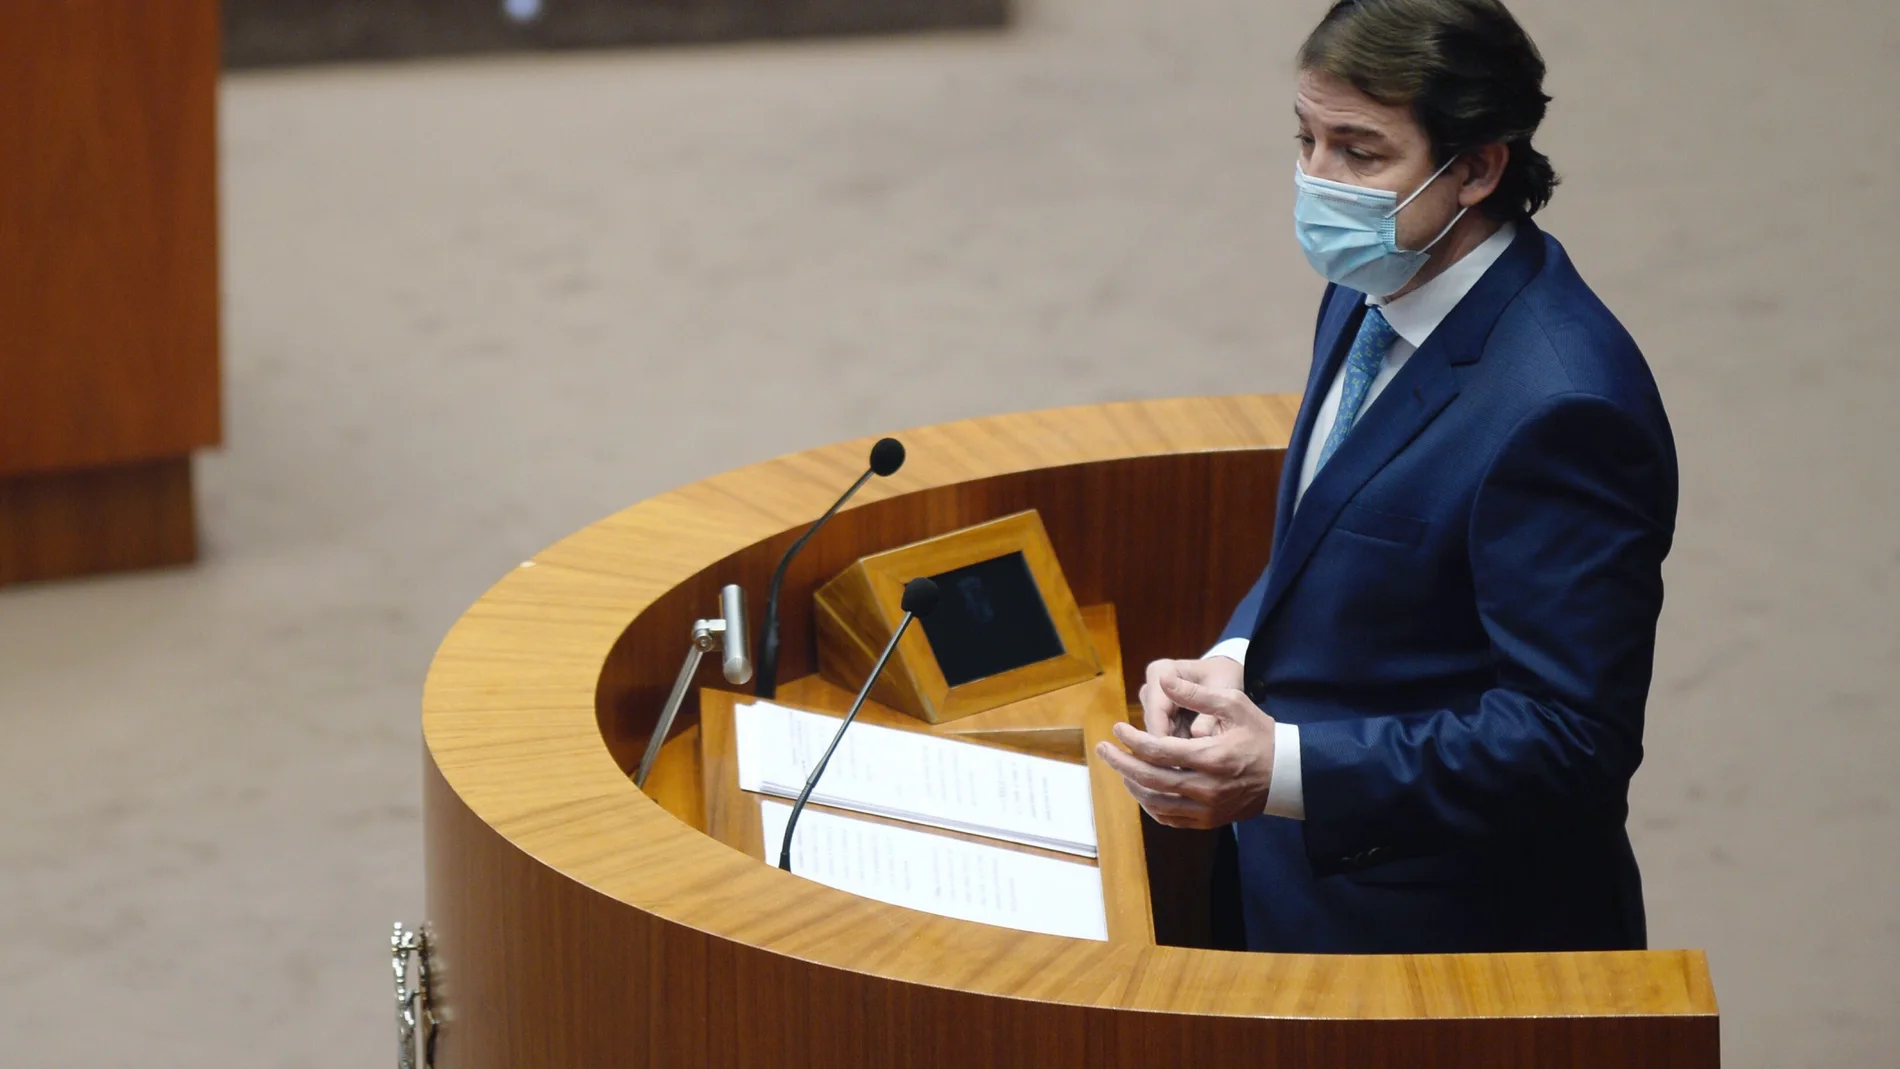 El presidente de la Junta de Castilla y León, Alfonso Fernández Mañueco, comparece a petición propia en las Cortes para explicar las medidas adoptadas por su gobierno durante la pandemia del Covid-19